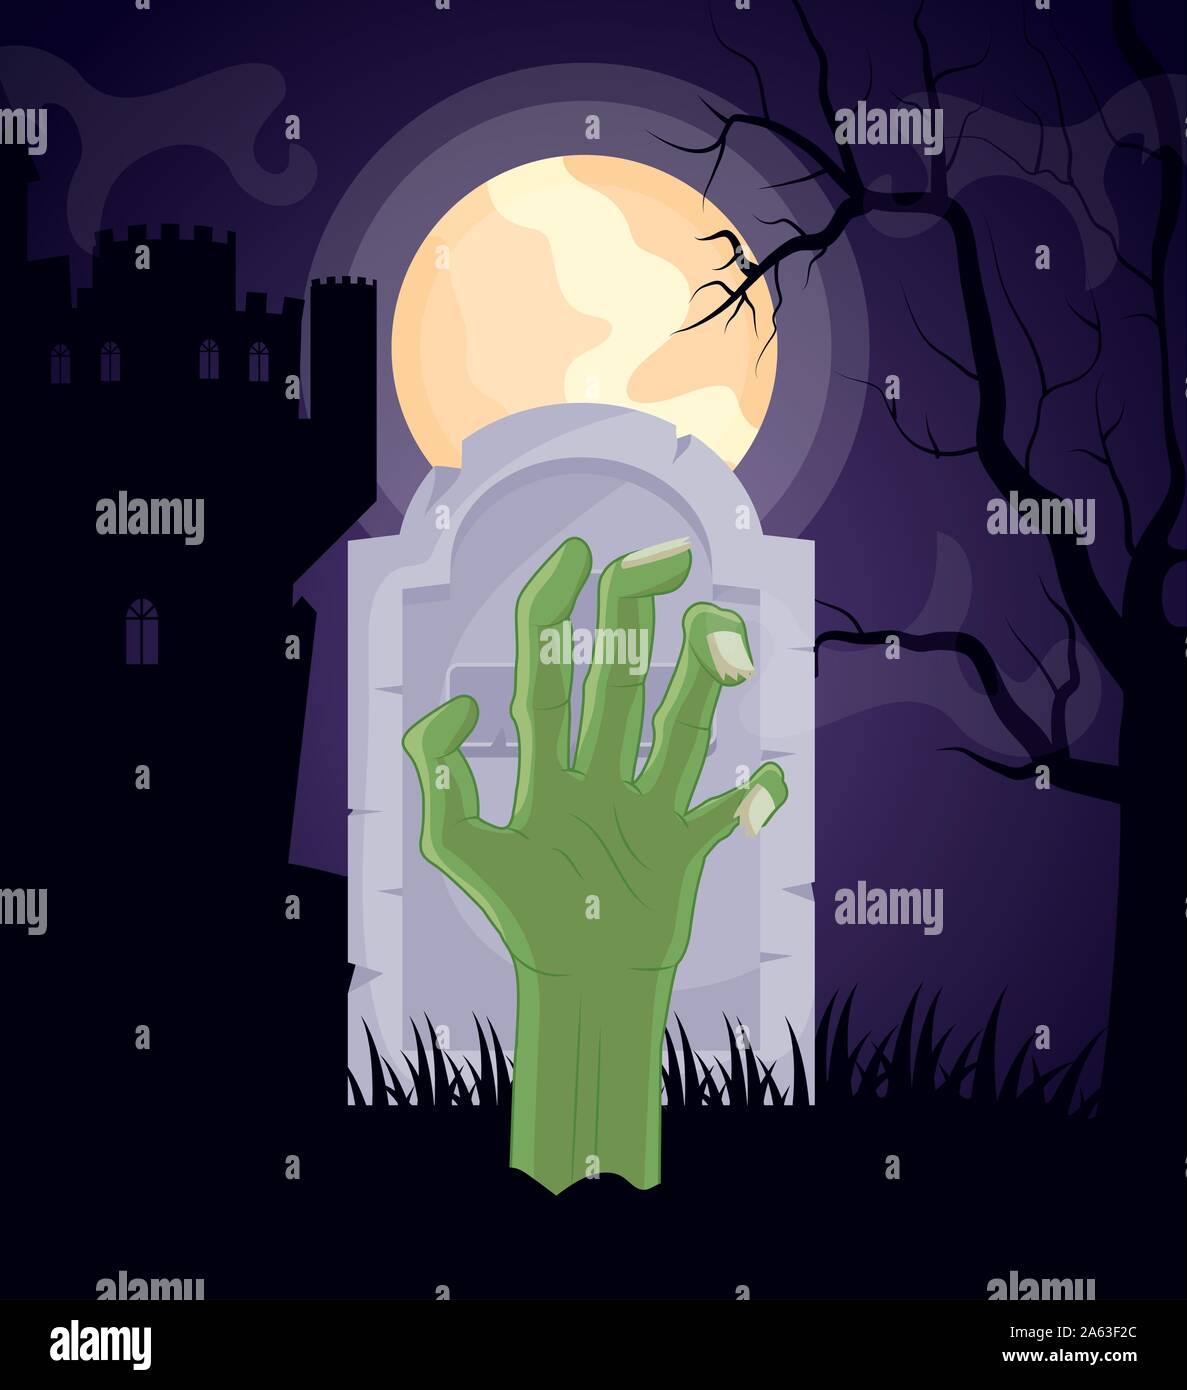 halloween dark cemetery scene with sombie hand Stock Vector Image & Art ...